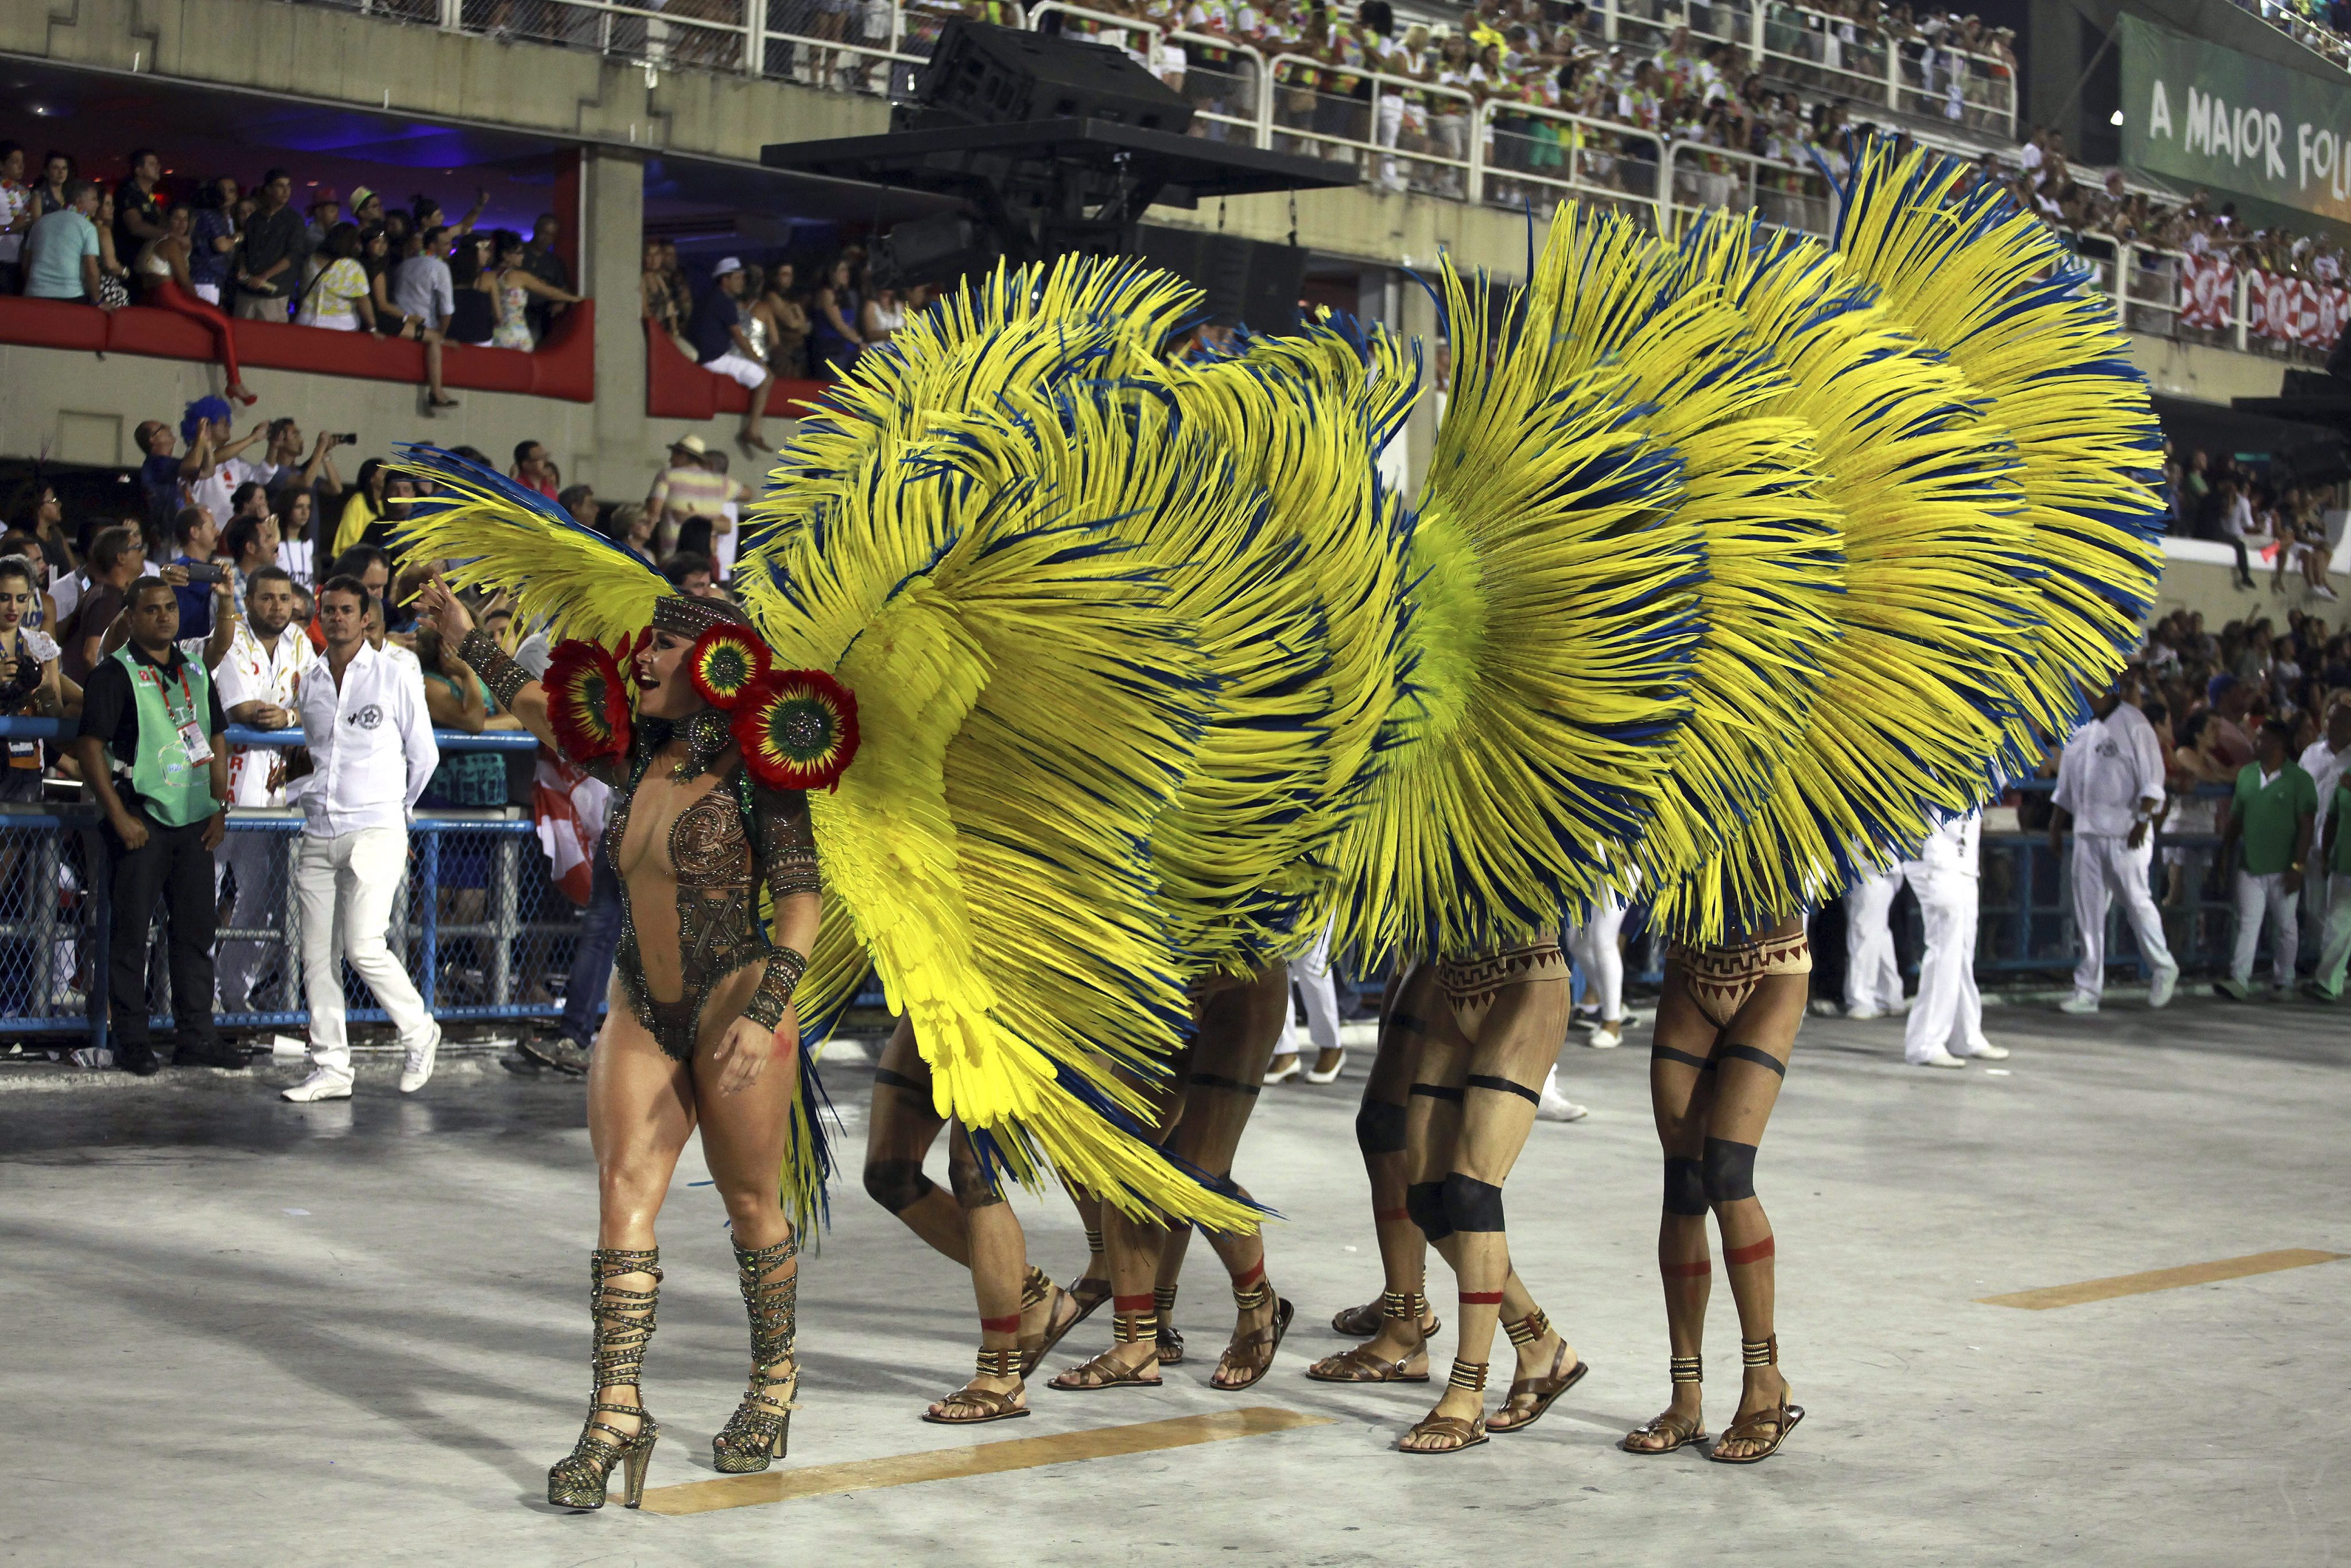 Nézegess képeket a Riói karneválról